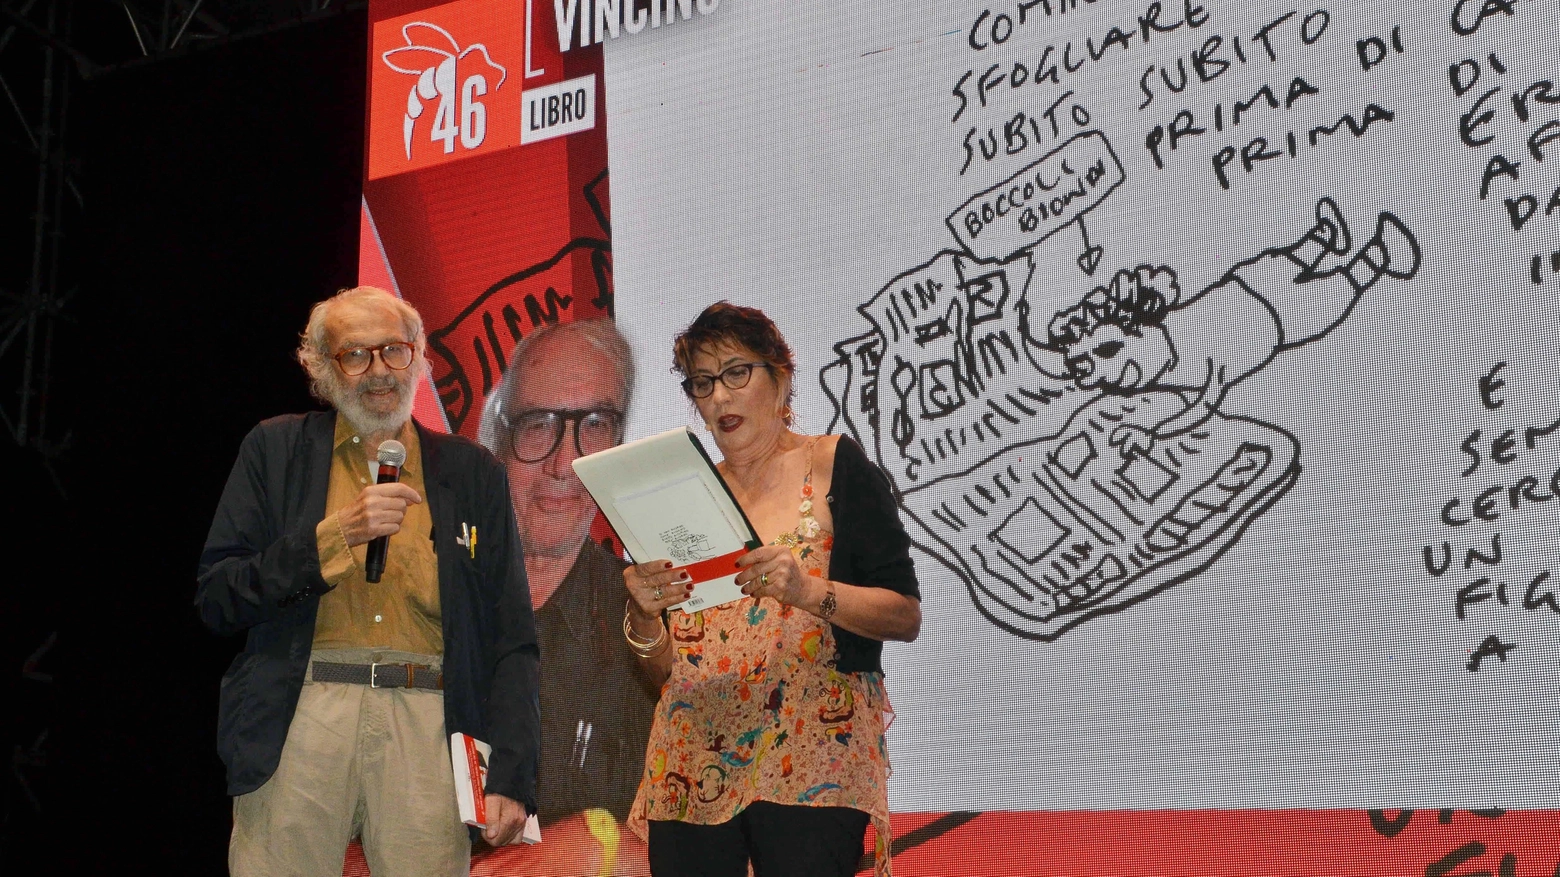 Il vignettista scoparso a 72 anni aveva vinto da poco il suo terzo riconoscimento alla manifestazione internazionale